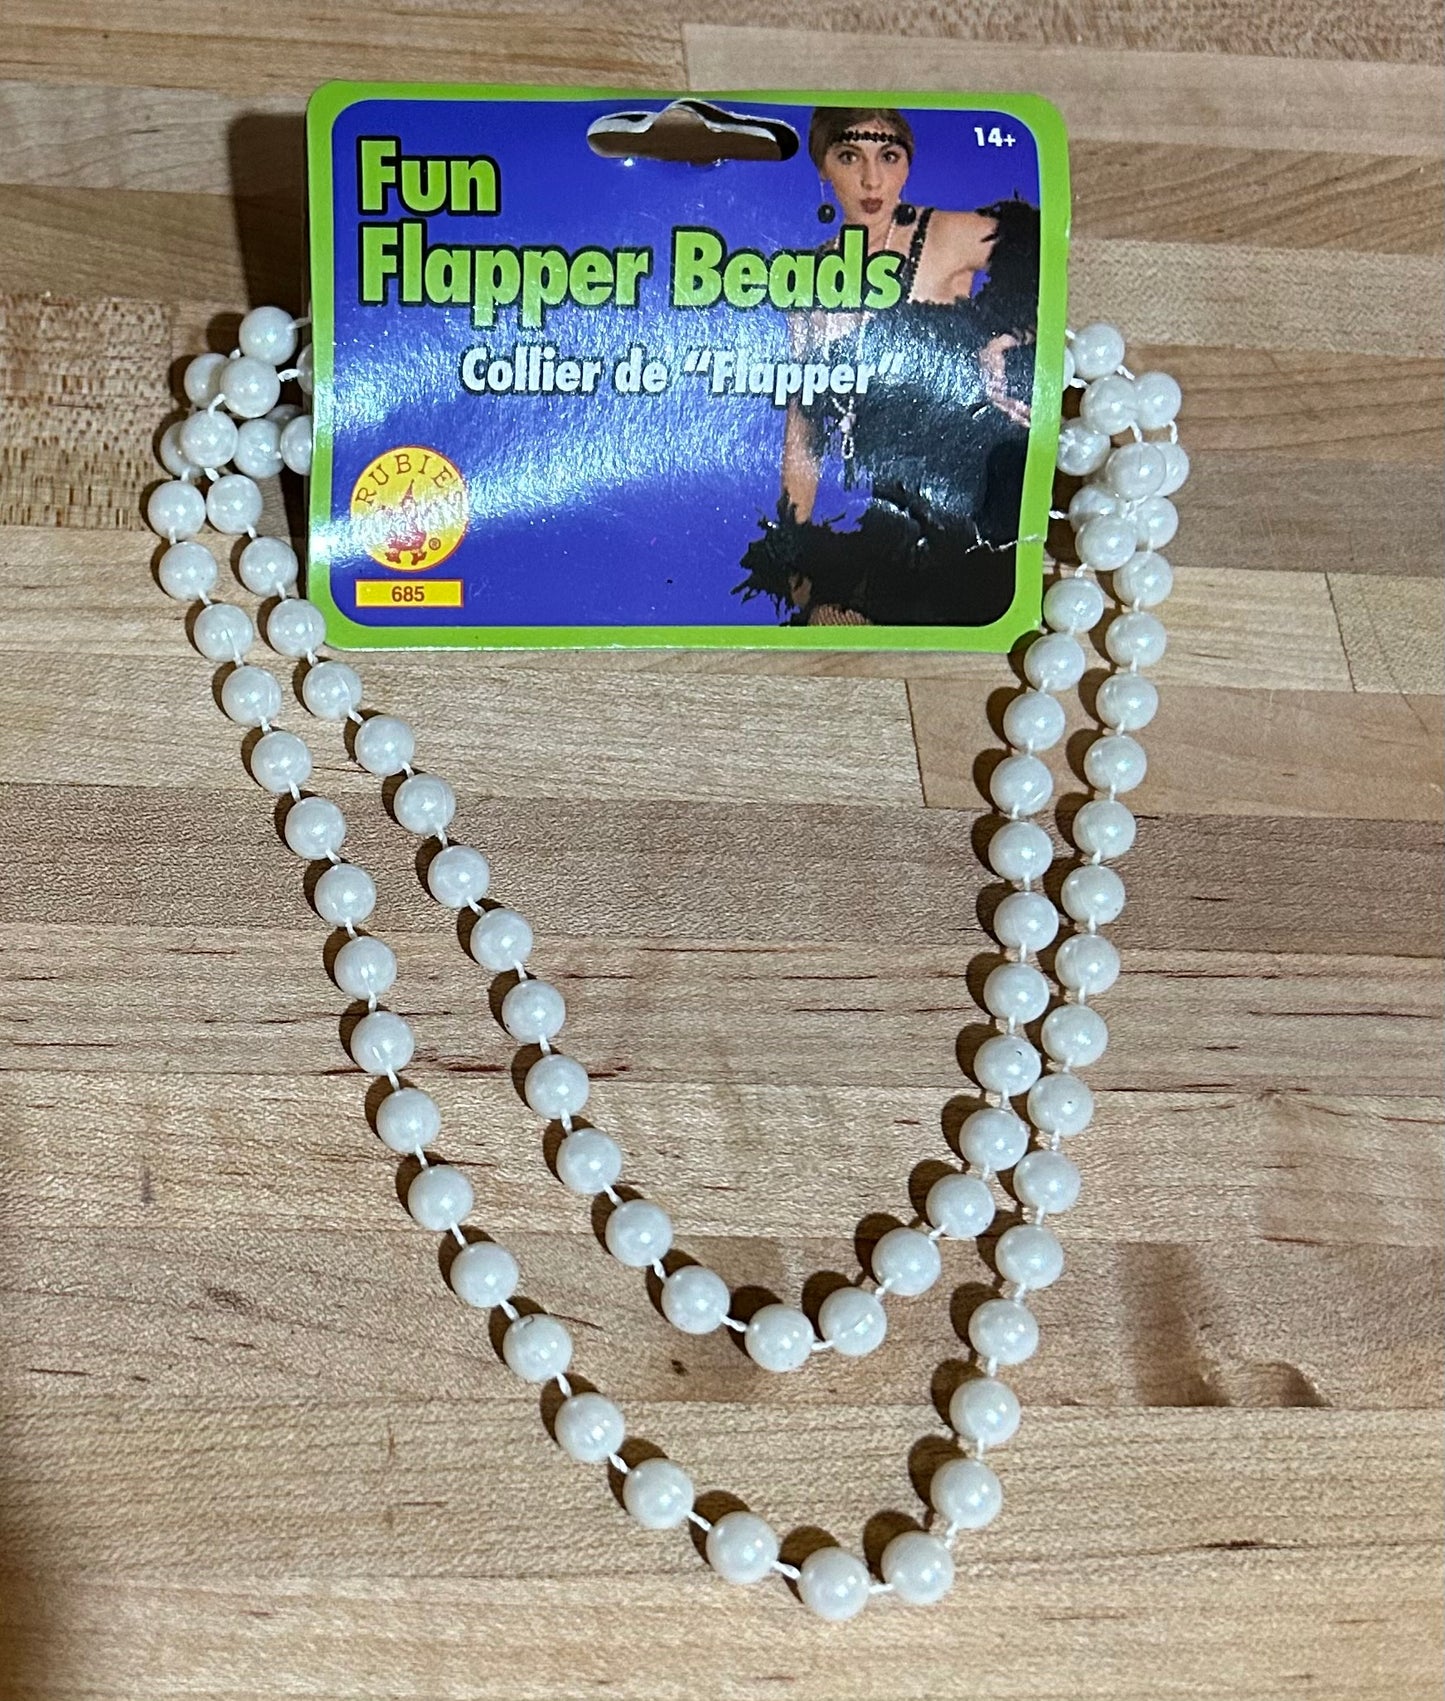 Fun White  Flapper Beads 685